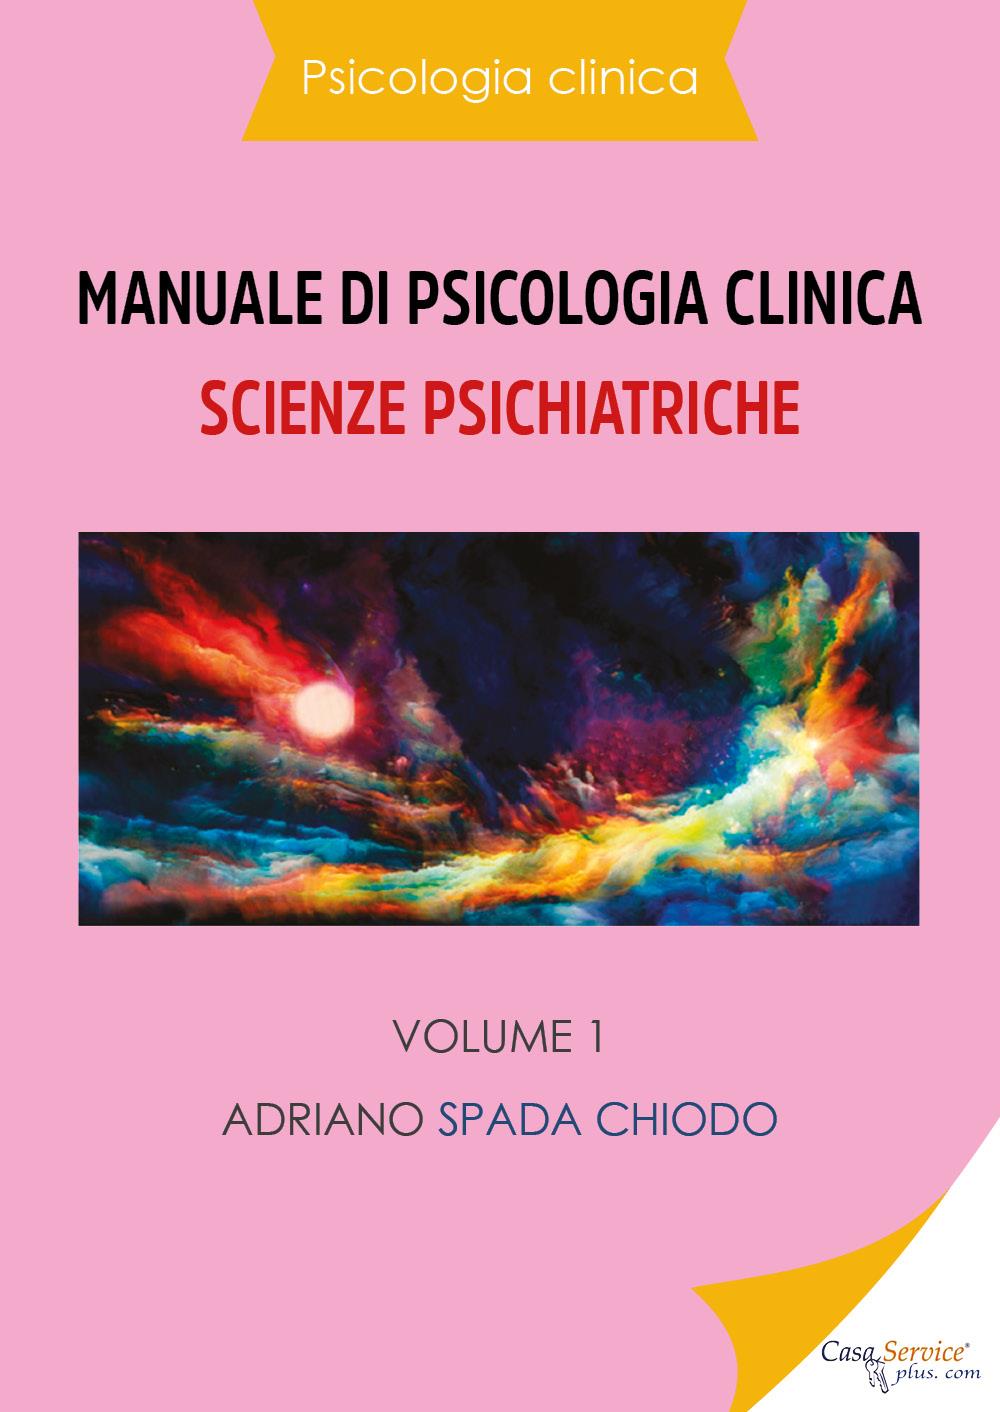 Psicologia clinica - Manuale di psicologia clinica - Scienze psichiatriche - Vol. 1